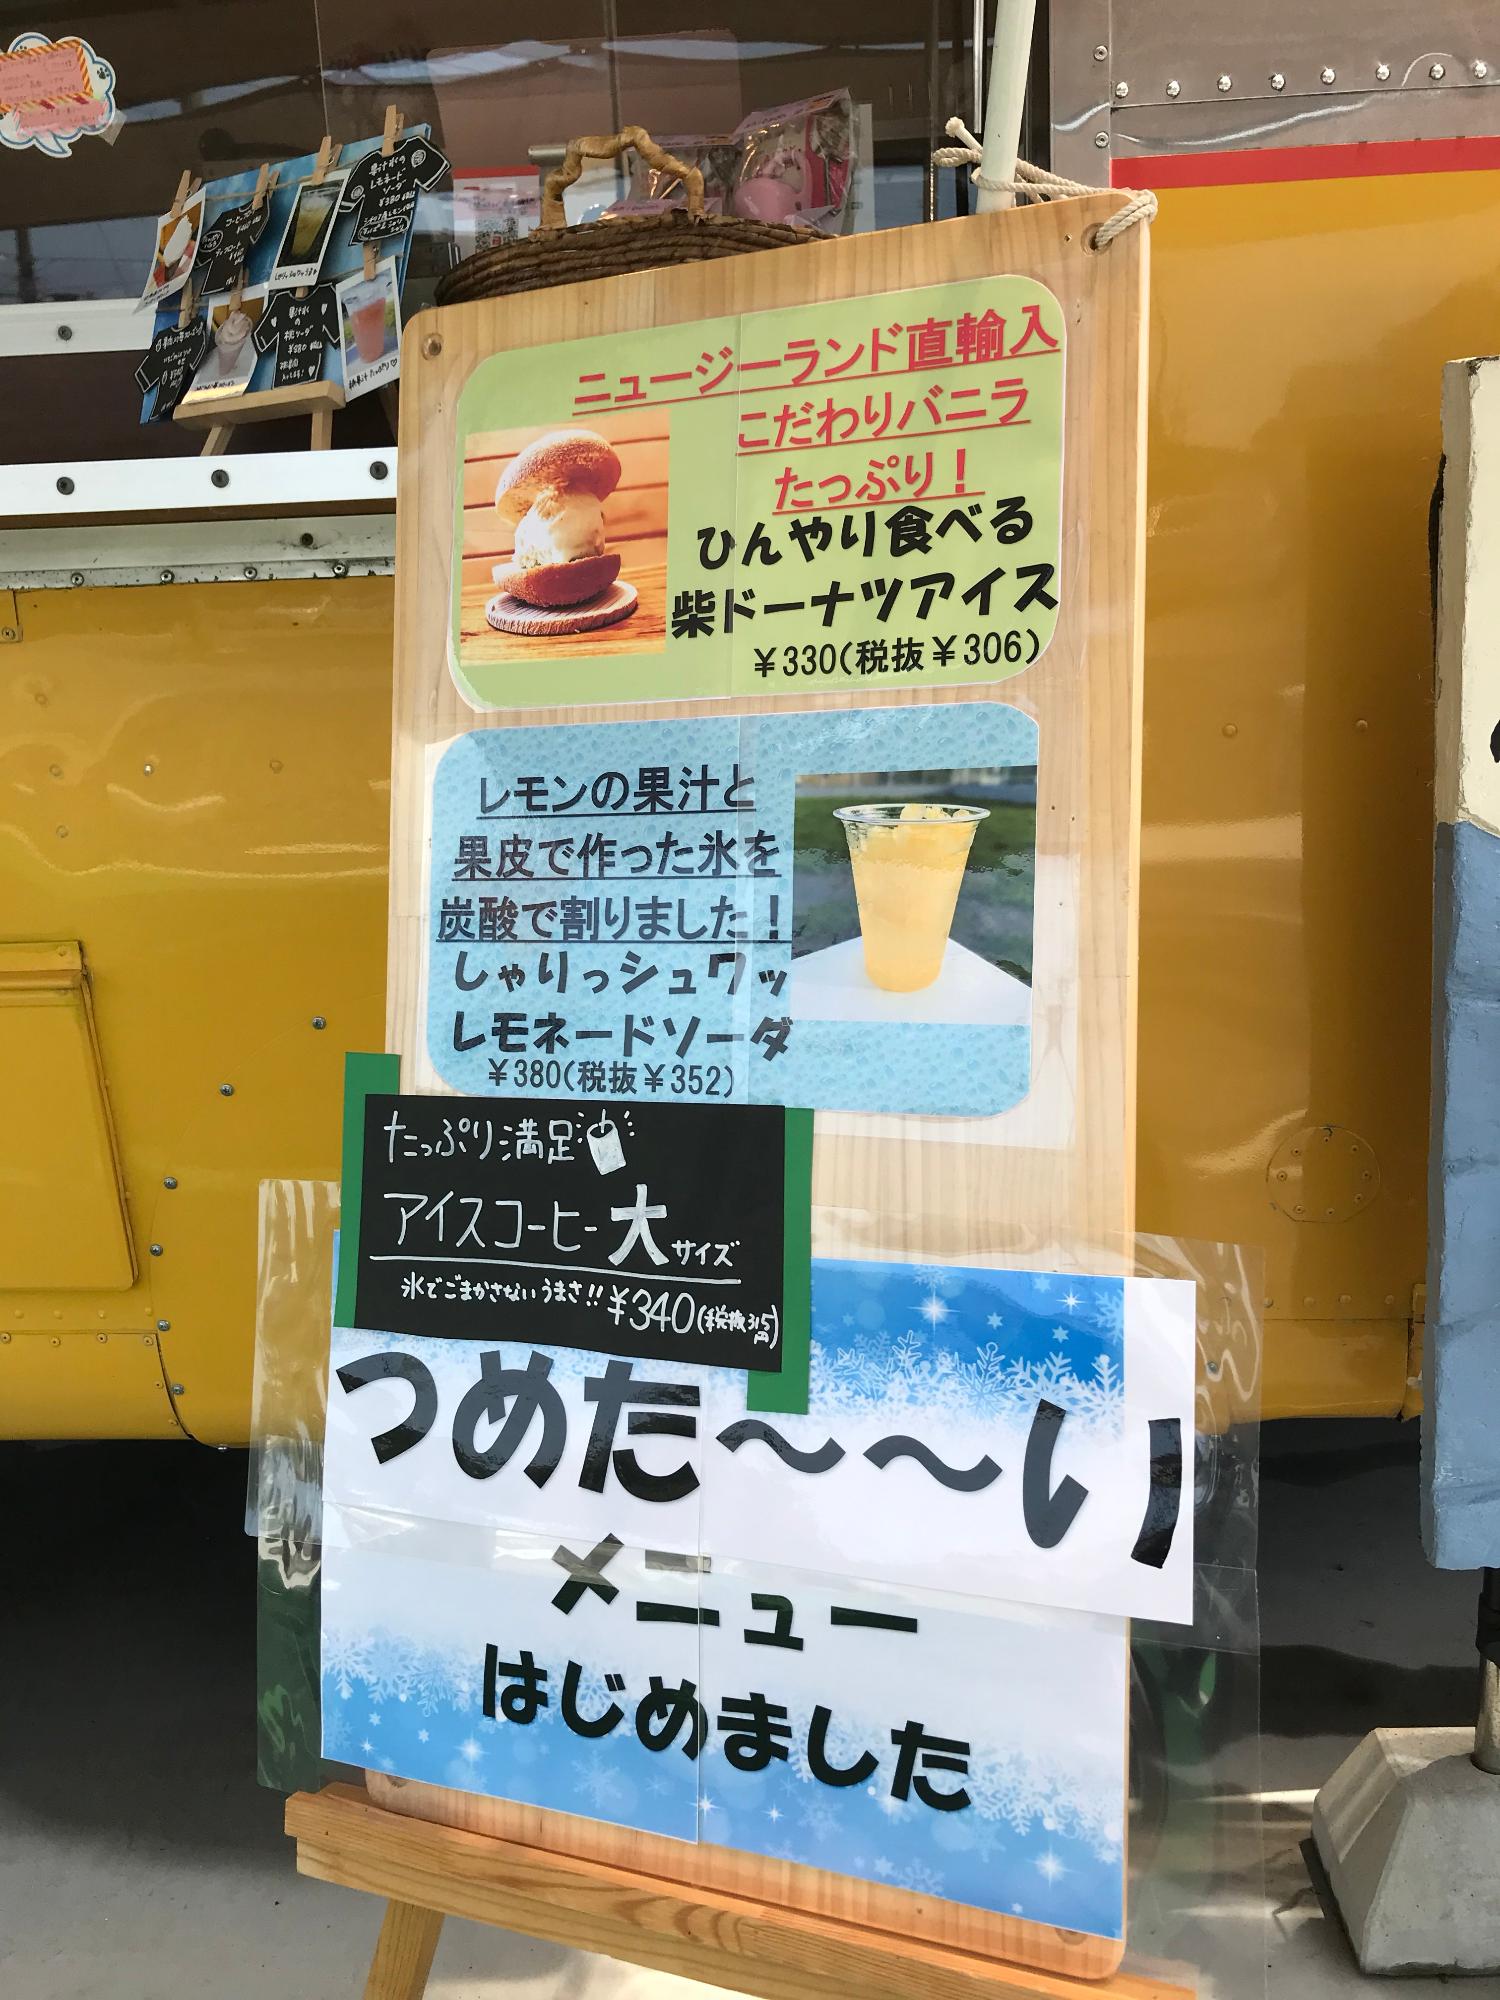 柴ドーナツアイス・レモネードソーダ・アイスコーヒーが書かれた冷たいメニューの看板